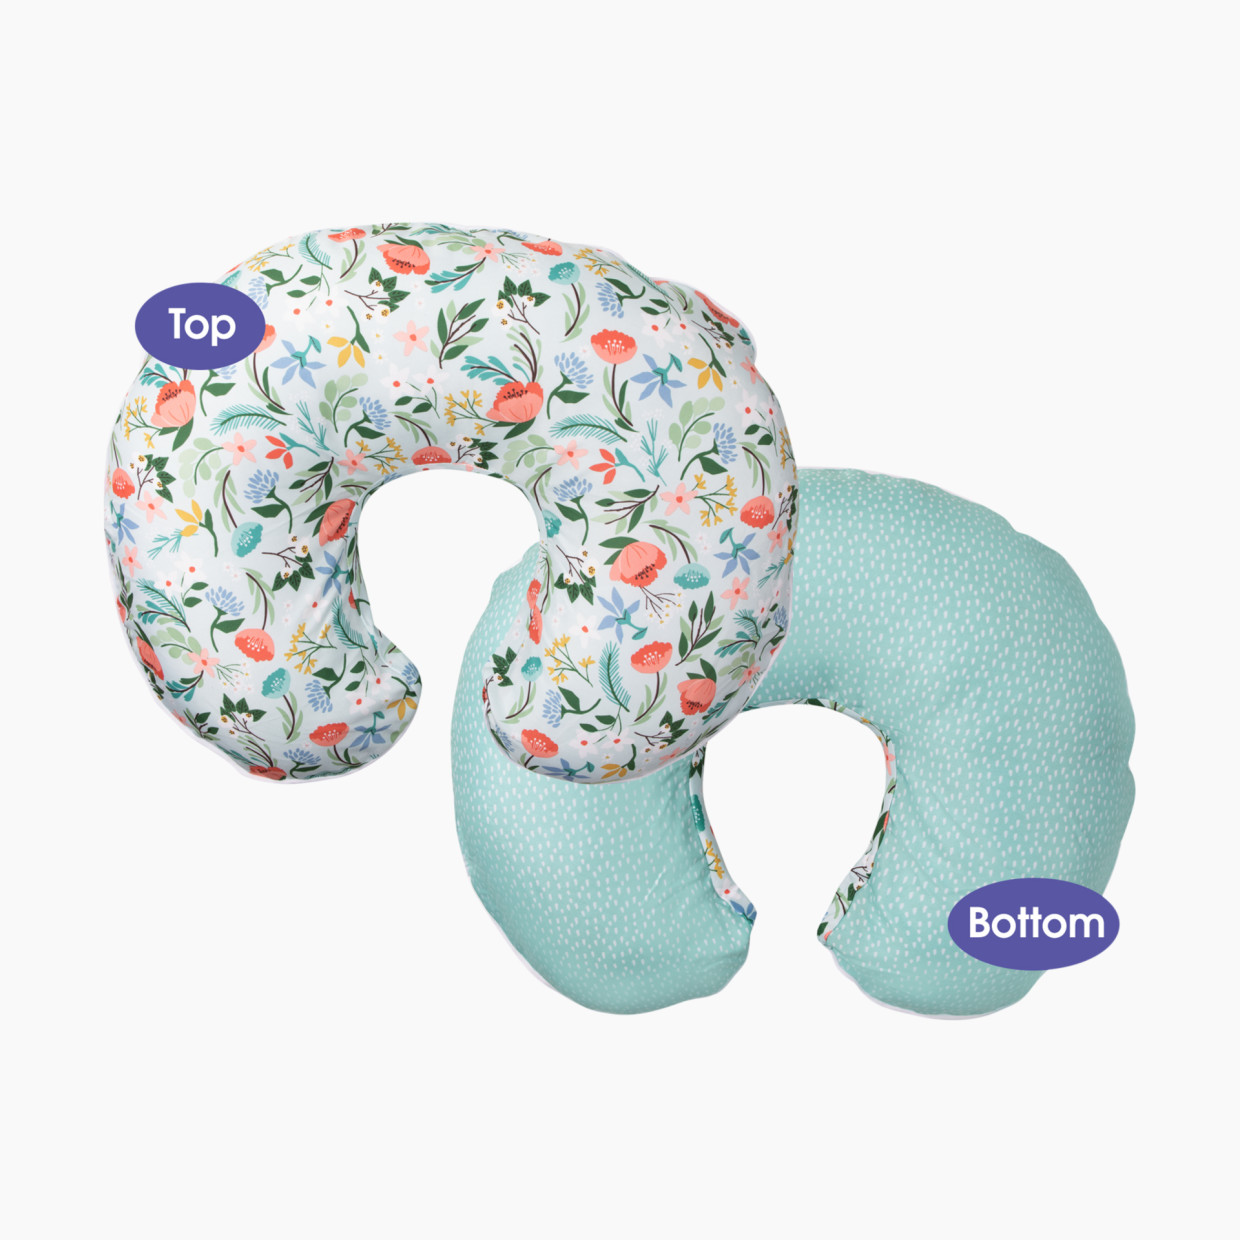 Boppy Premium Nursing Support Pillow Cover - Mint Flower Shower.